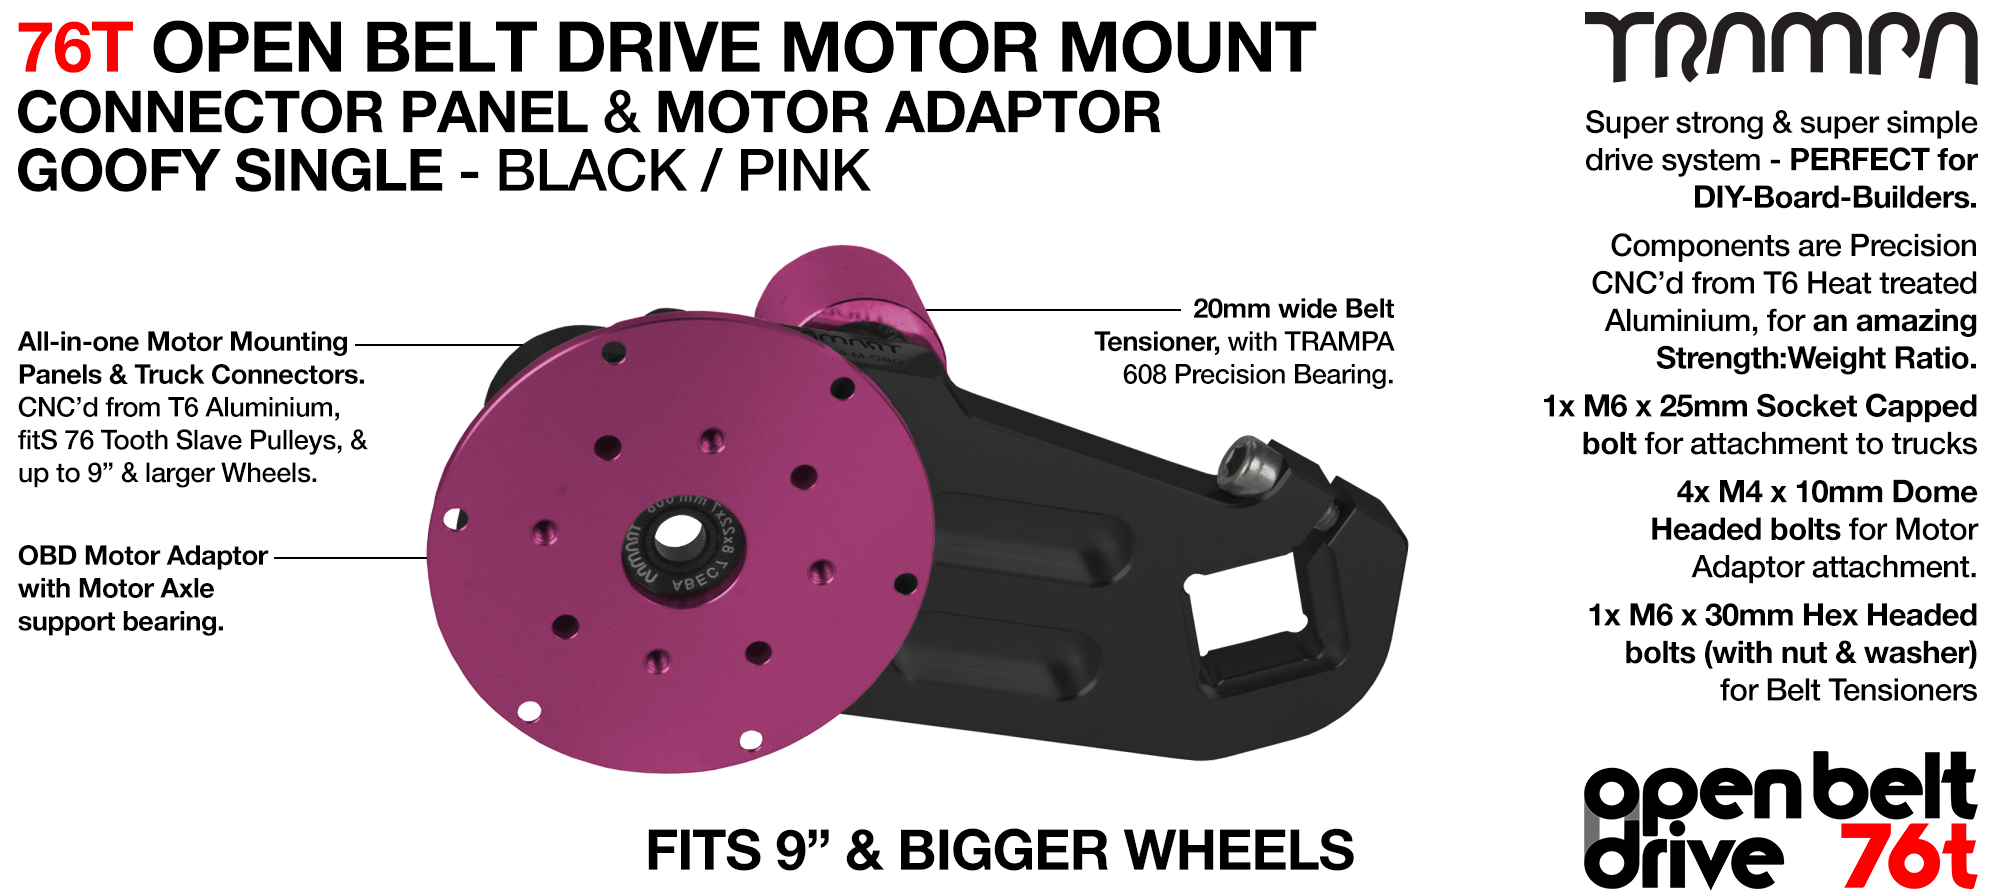 76T Open Belt Drive Motor Mount & Motor Adaptor - SINGLE PINK